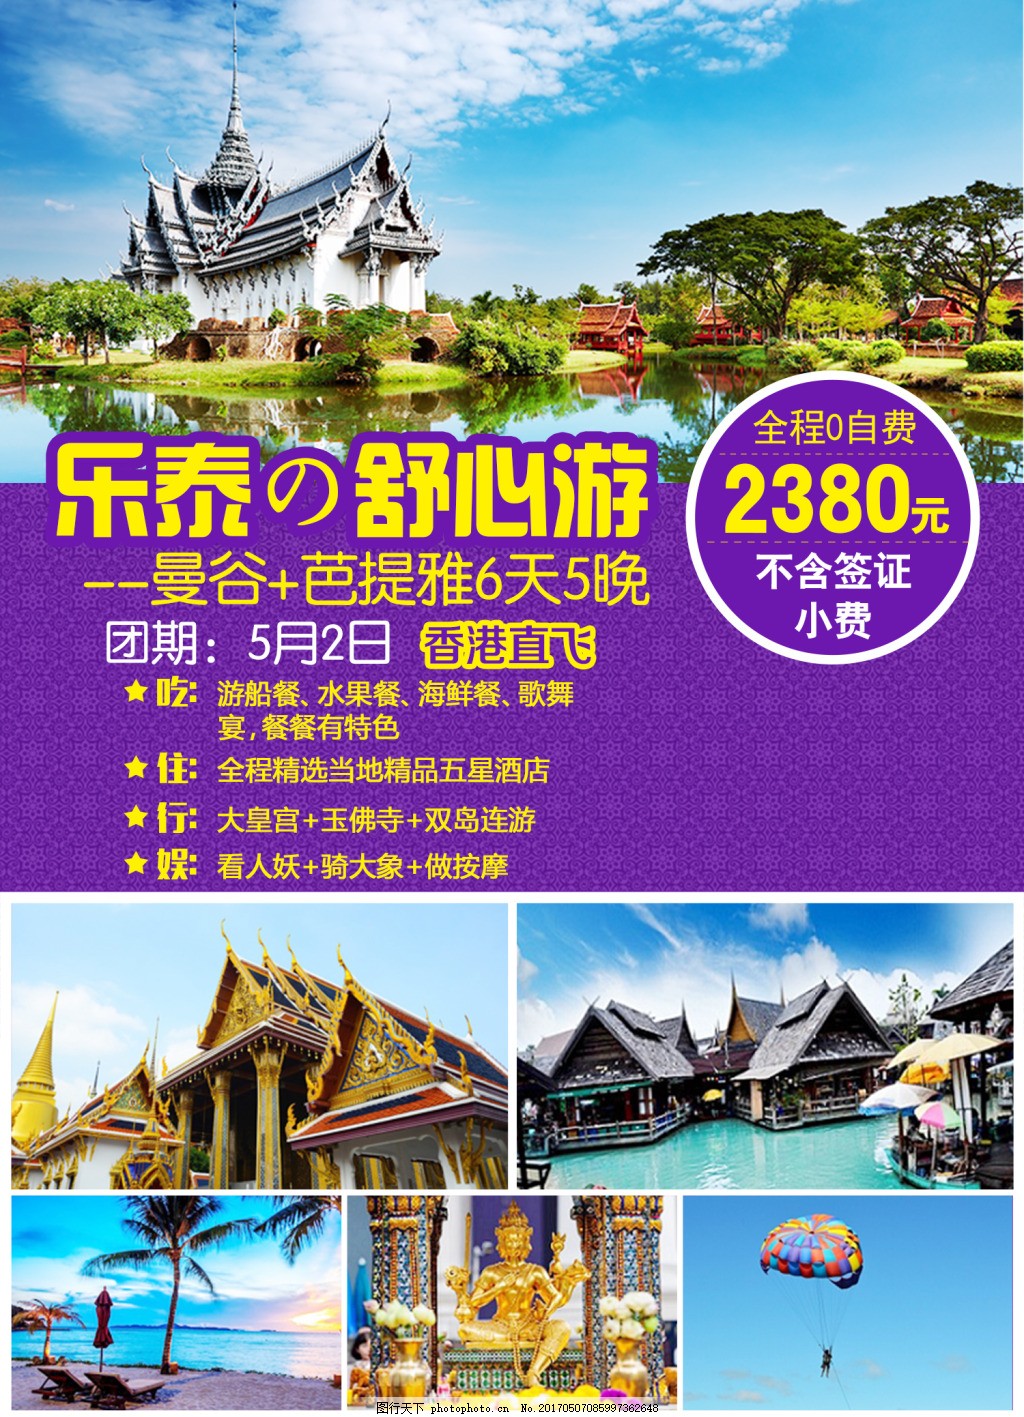 新版泰国彩页,泰国旅游 跟团旅游 泰国建筑 海岛